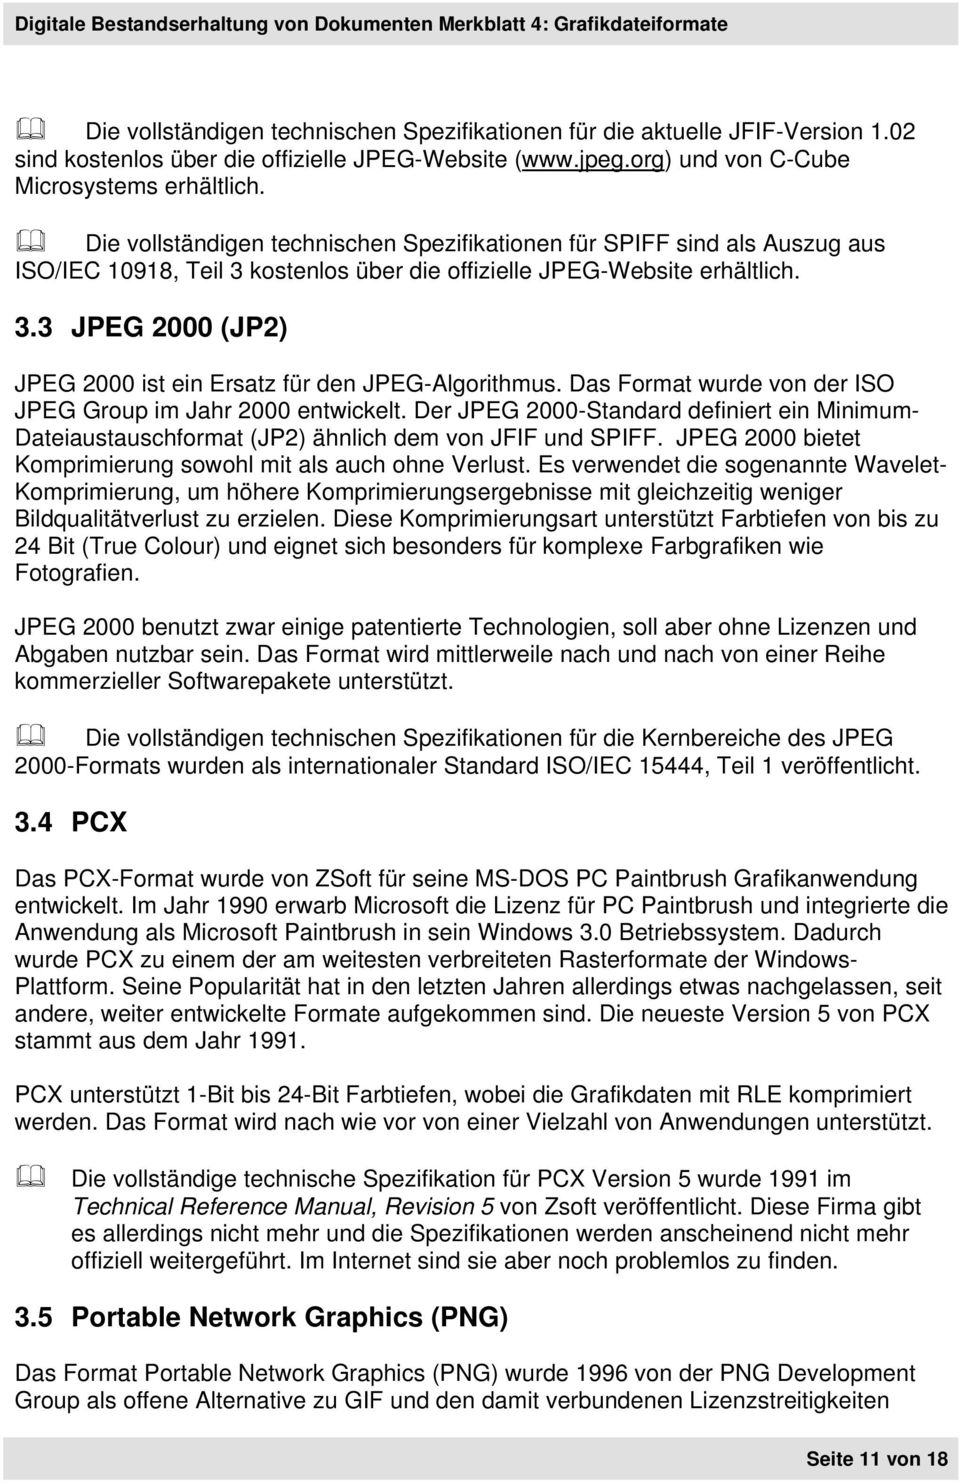 Das Format wurde von der ISO JPEG Group im Jahr 2000 entwickelt. Der JPEG 2000-Standard definiert ein Minimum- Dateiaustauschformat (JP2) ähnlich dem von JFIF und SPIFF.